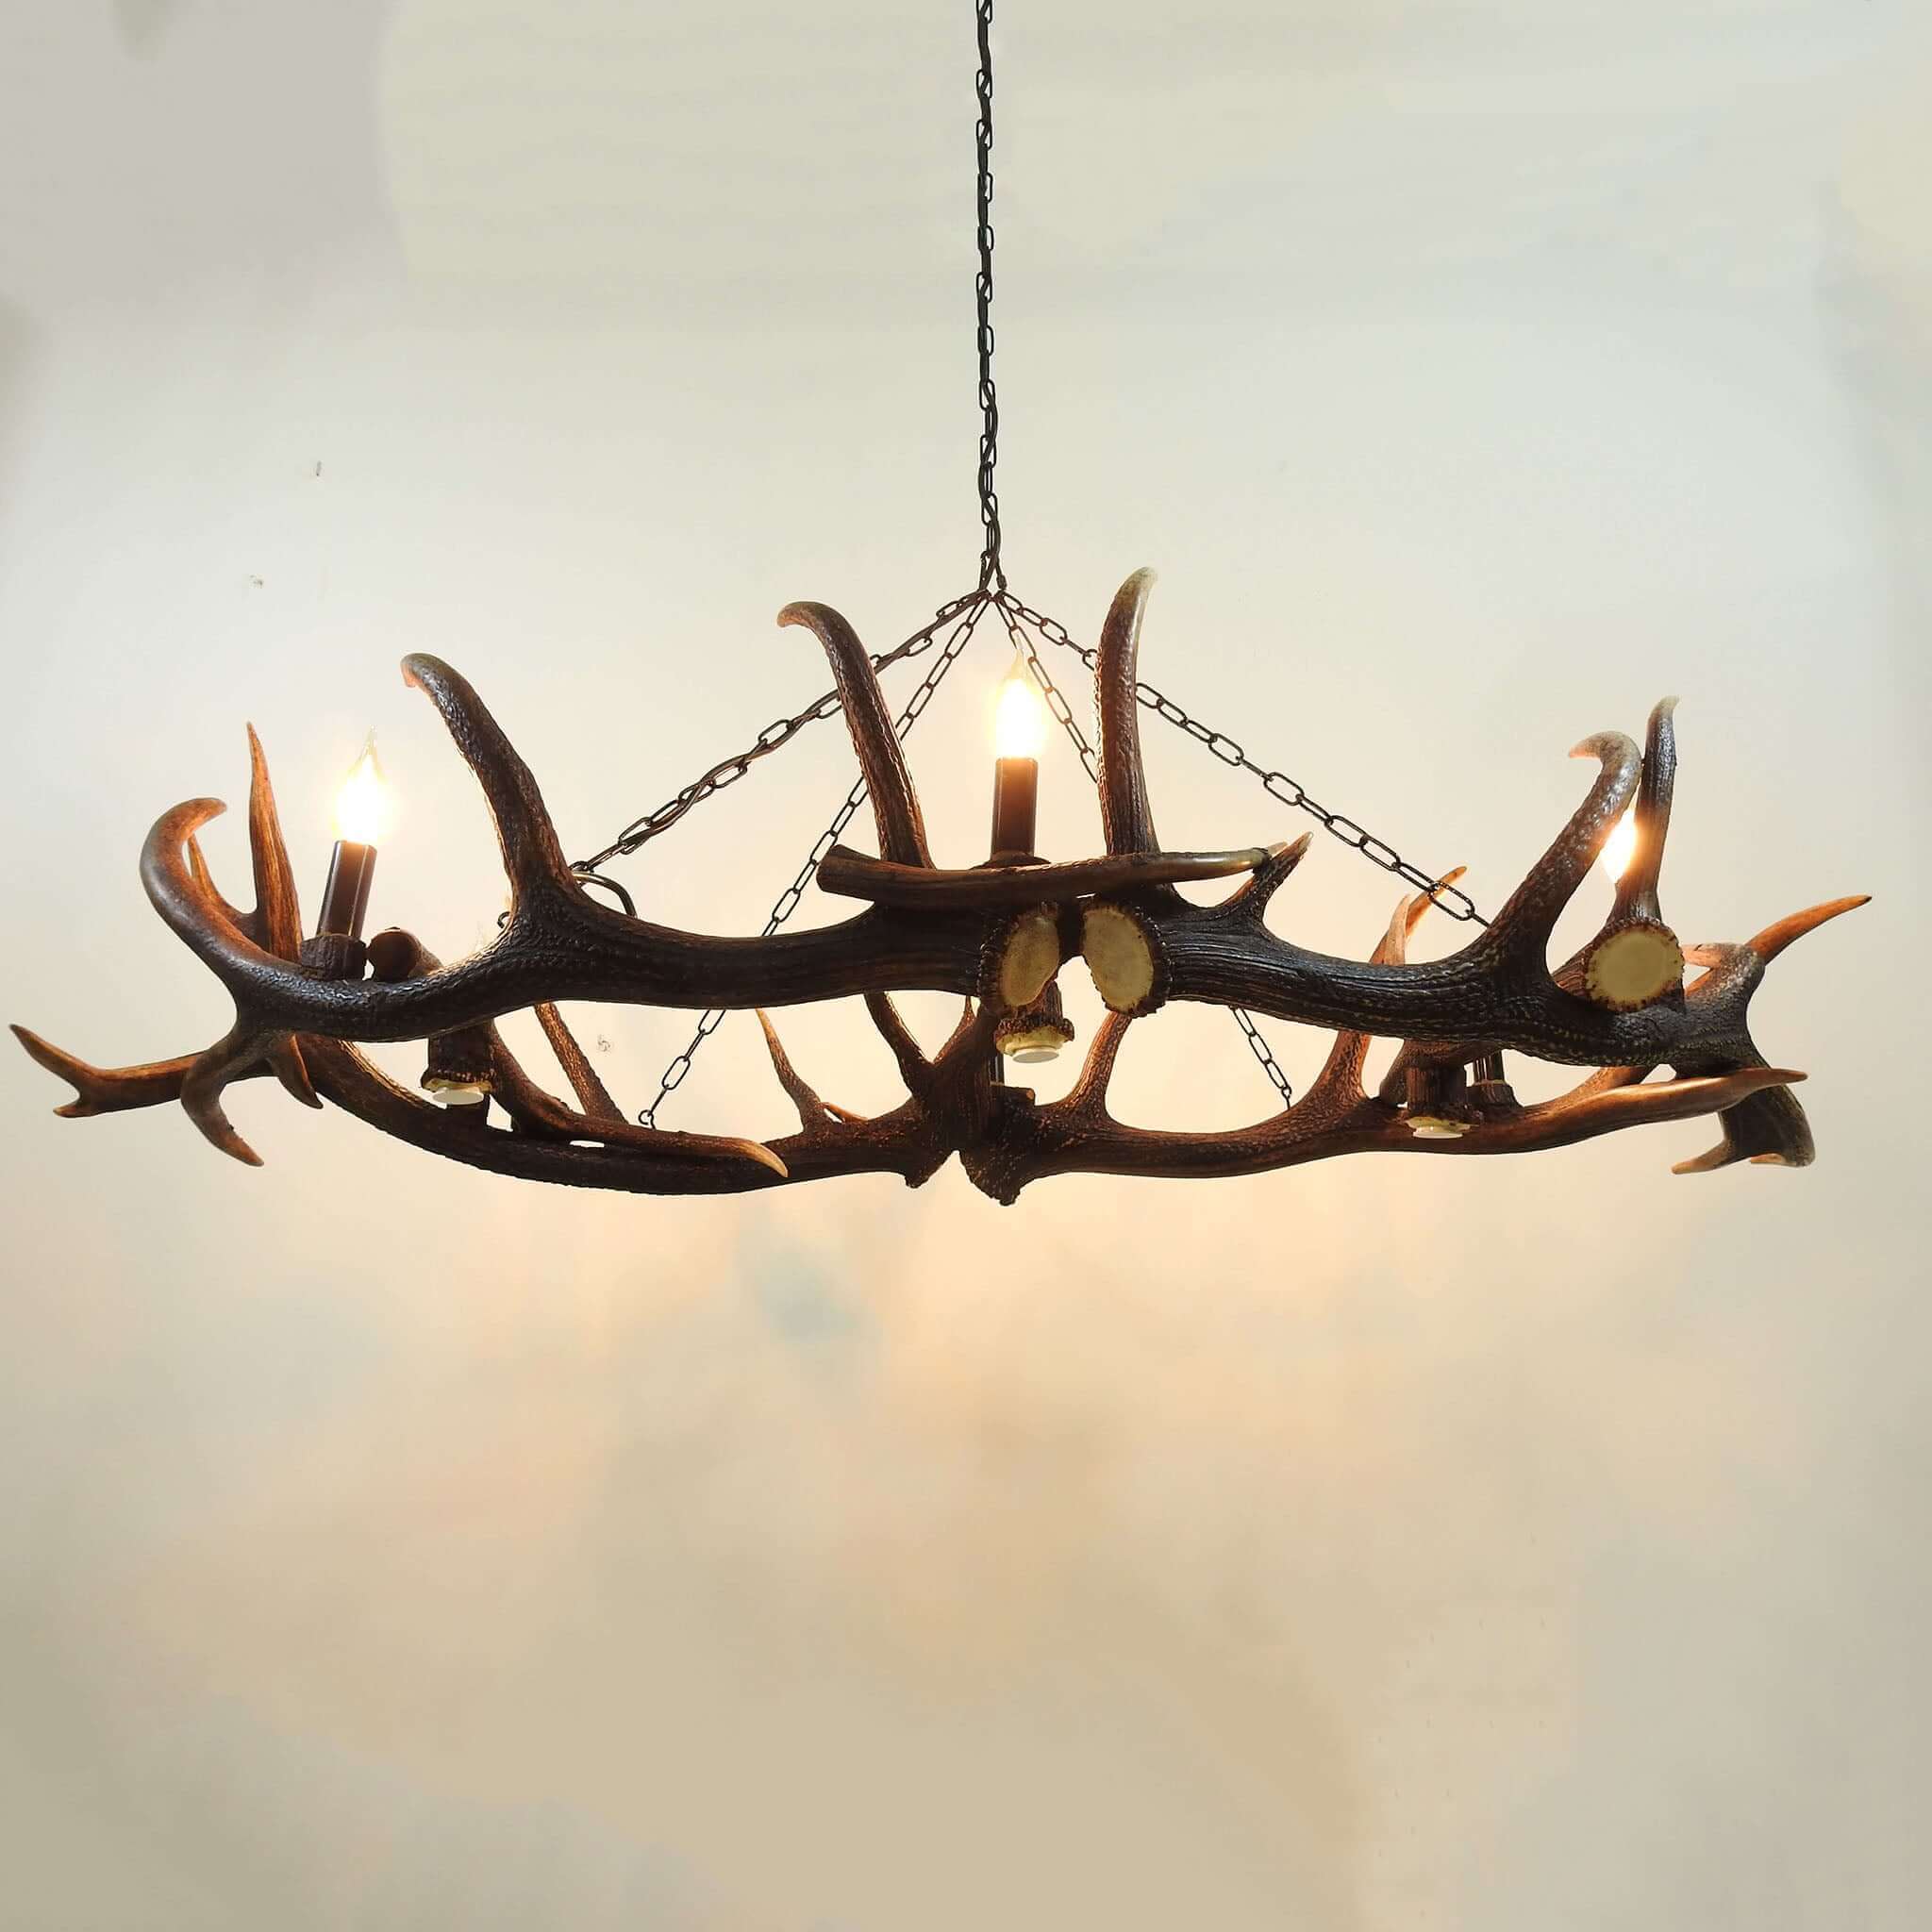 Real antler chandelier for dinning room.